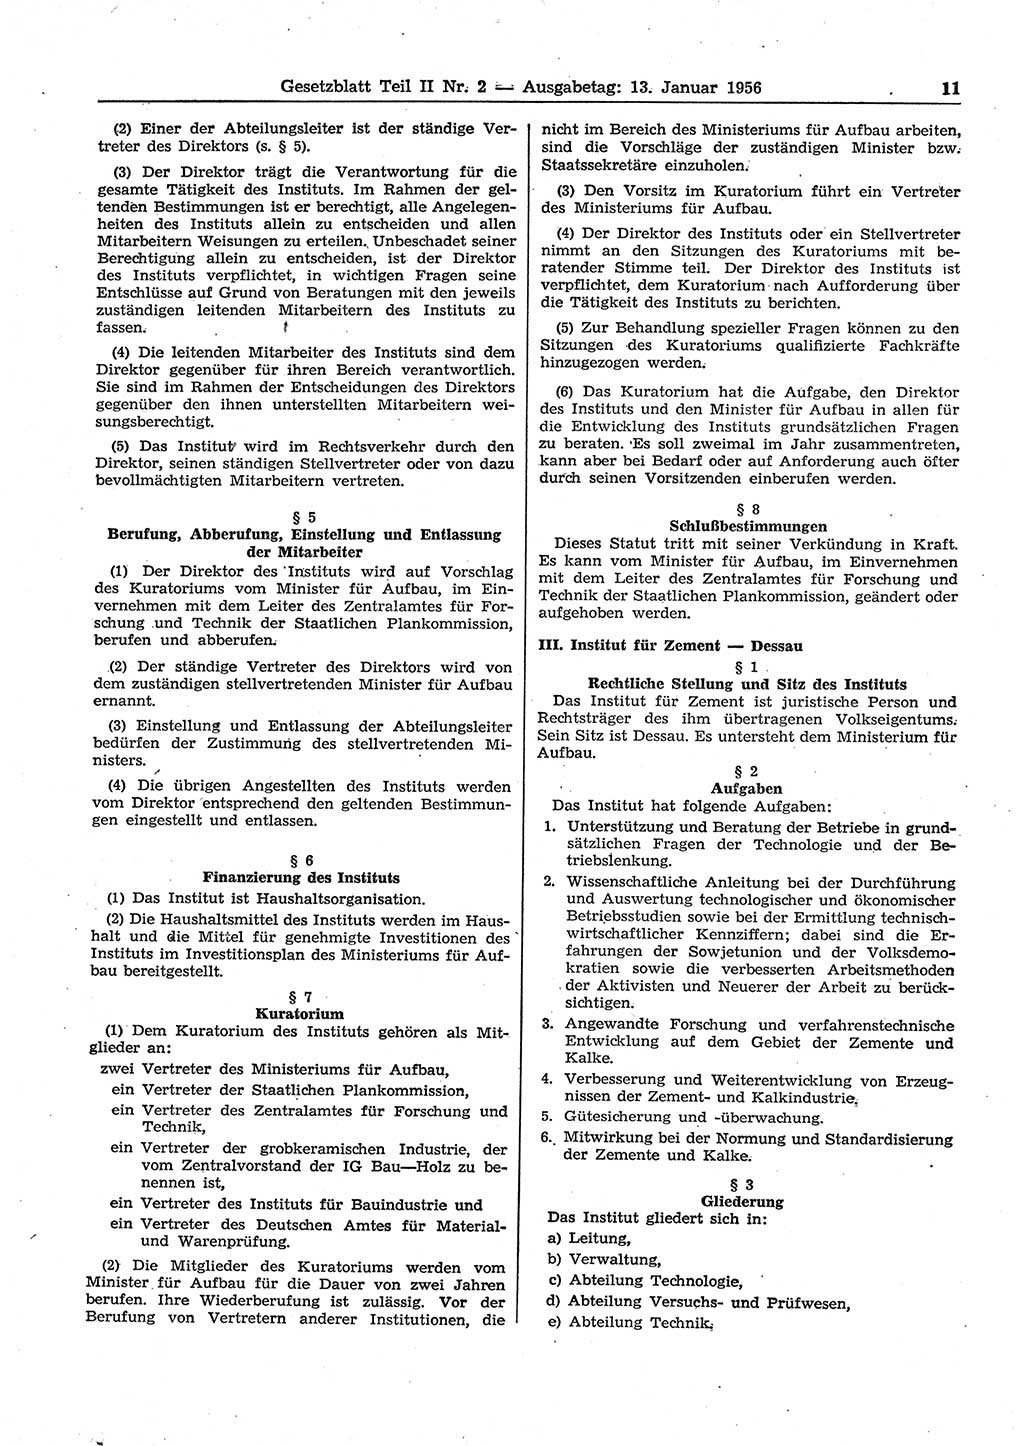 Gesetzblatt (GBl.) der Deutschen Demokratischen Republik (DDR) Teil ⅠⅠ 1956, Seite 11 (GBl. DDR ⅠⅠ 1956, S. 11)